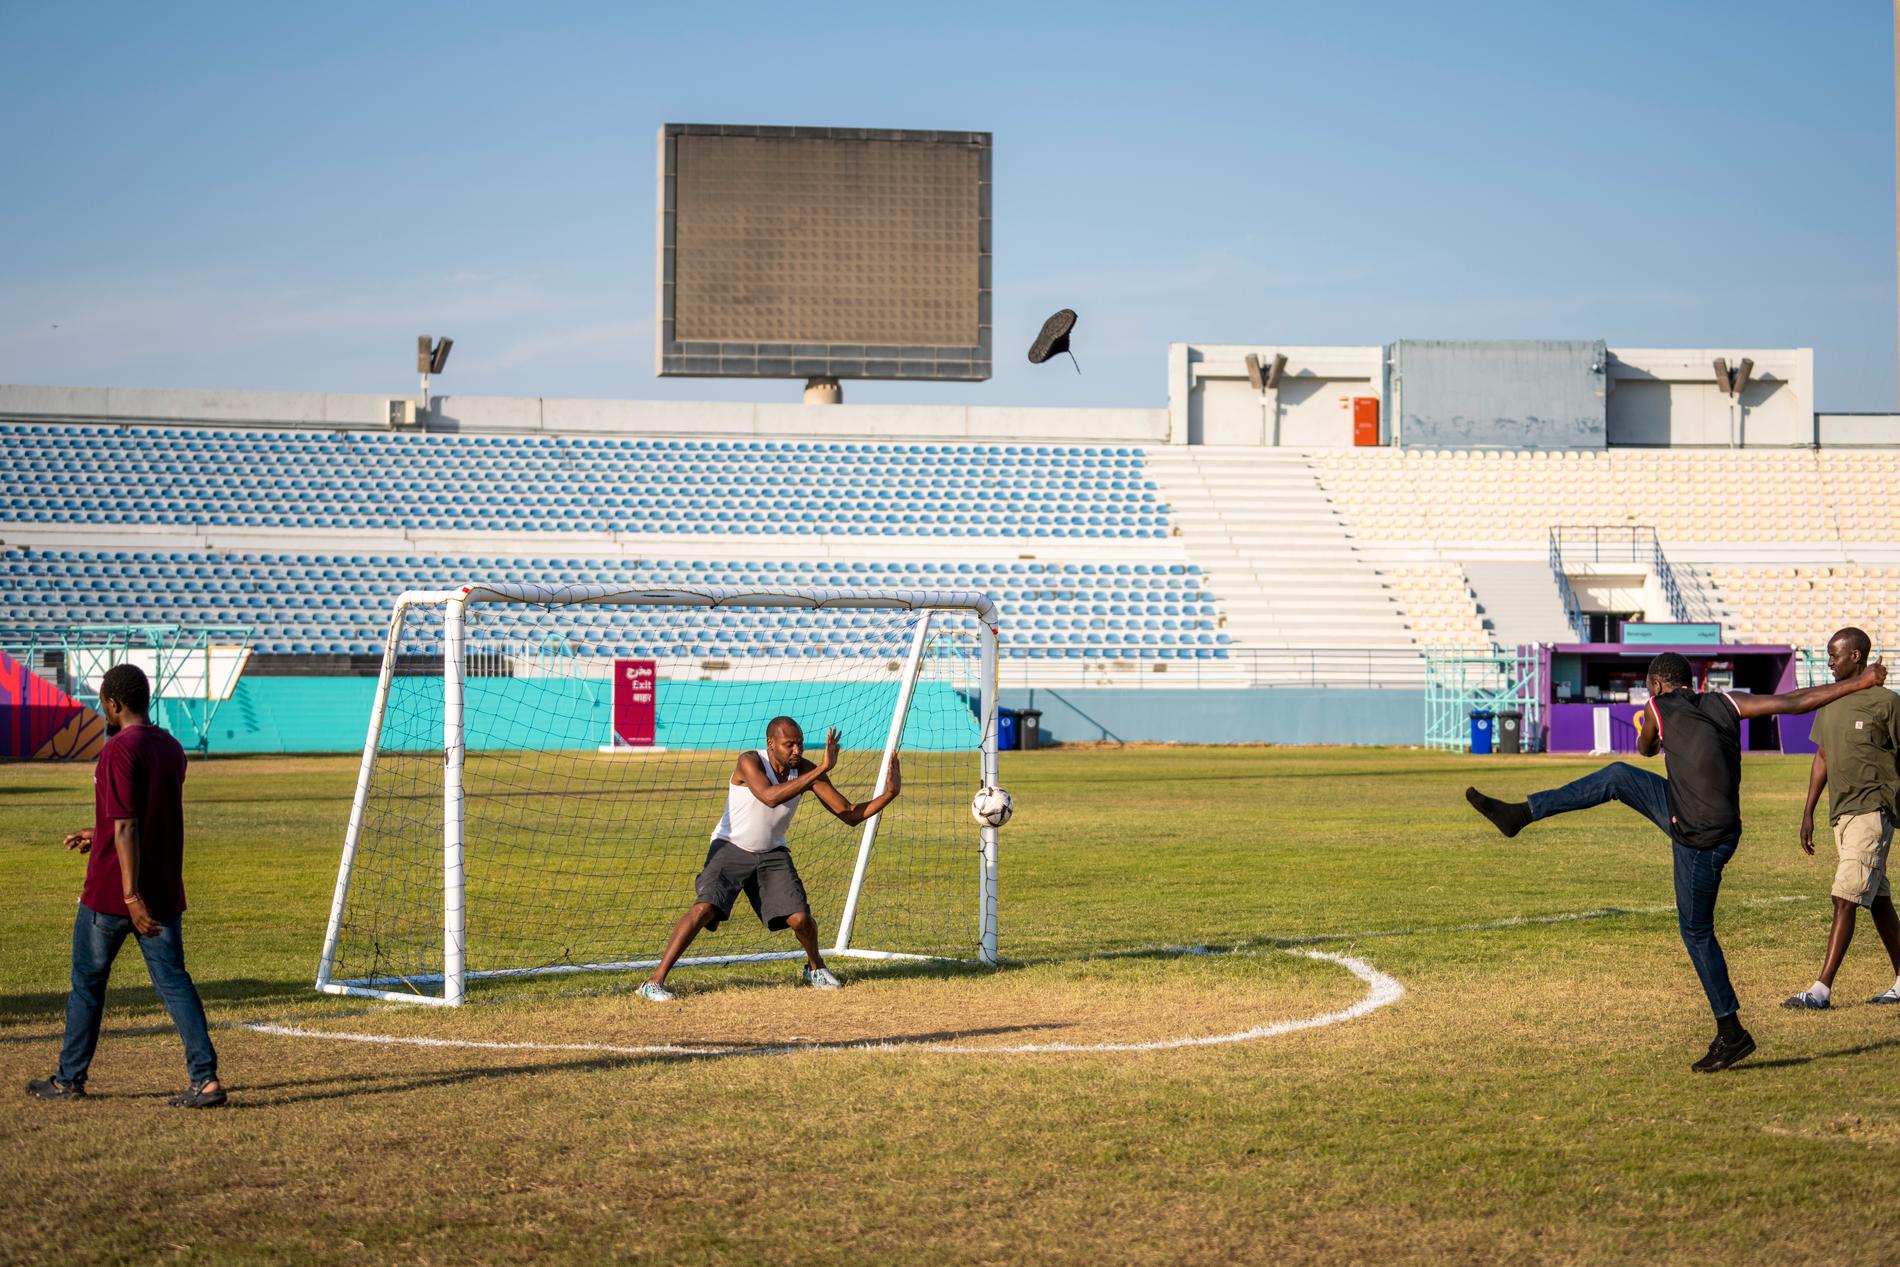 Migrantarbetare samlas vid Asian Cricket stadium i Asian town strax vänster om Doha för att på storbildskärm följa matcher under Fotbolls-VM i Qatar 2022. Mellan matcherna spelar de fotboll på en liten plan. 